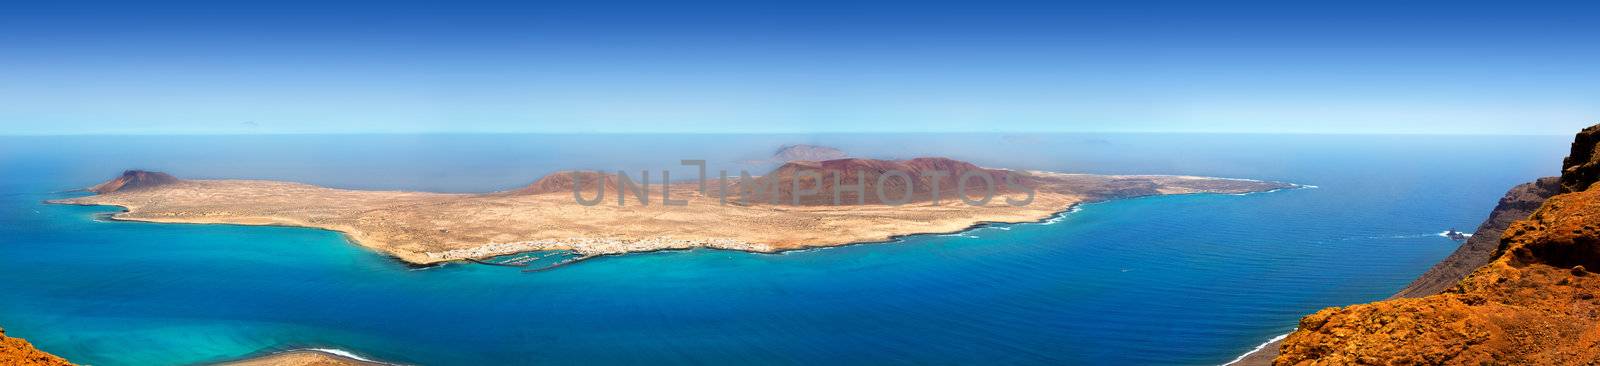 Lanzarote Mirador del rio La graciosa island panoramic in Canary Islands